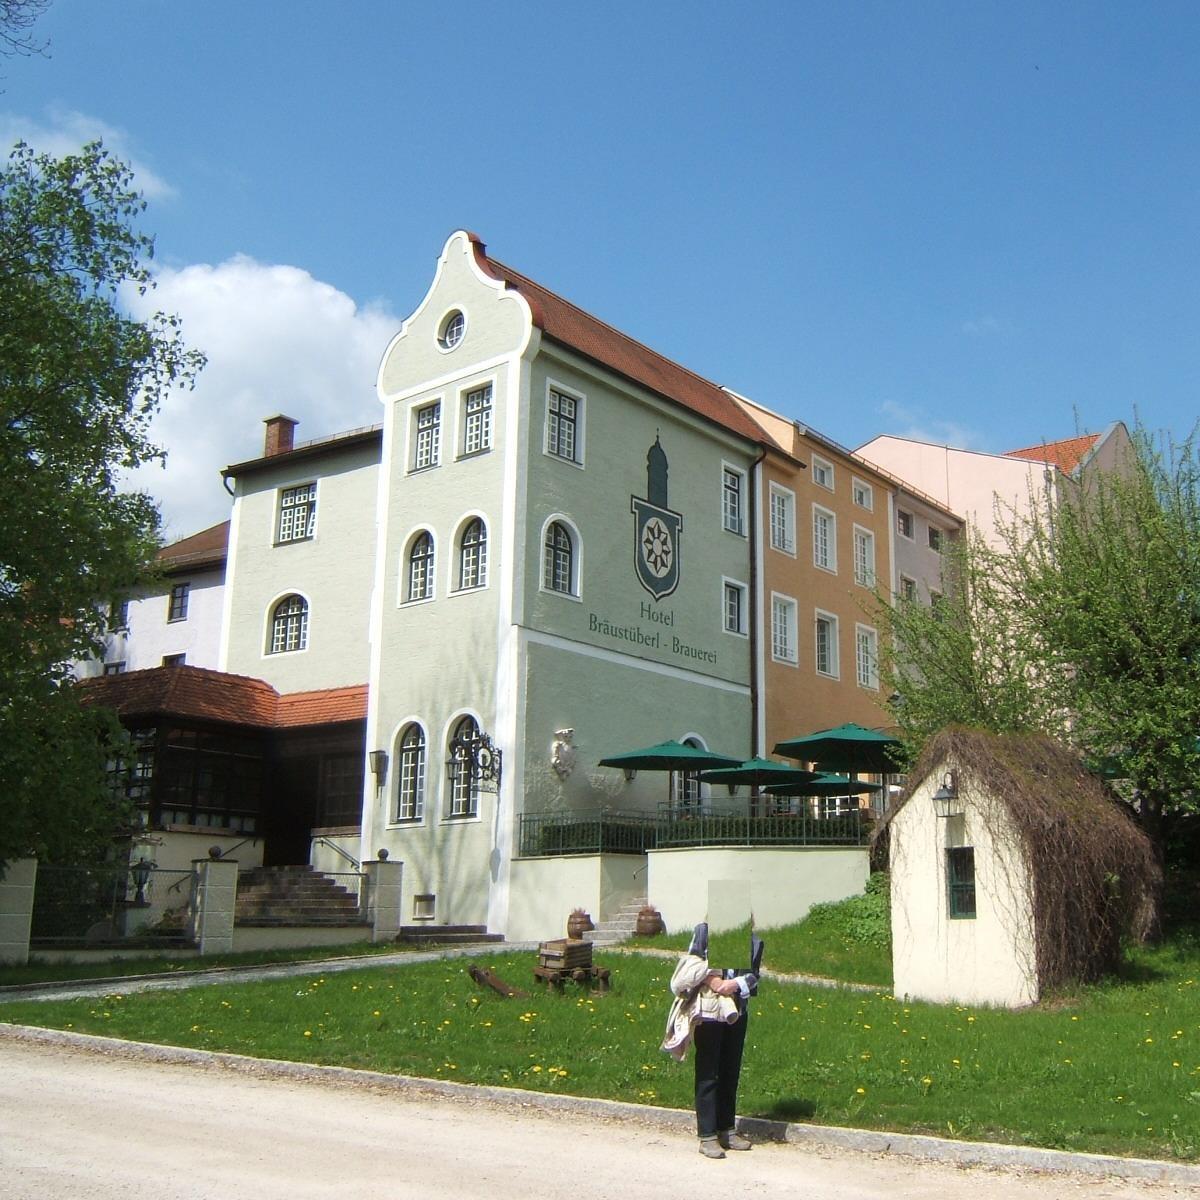 Restaurant "Schlossbrauerei" in Odelzhausen